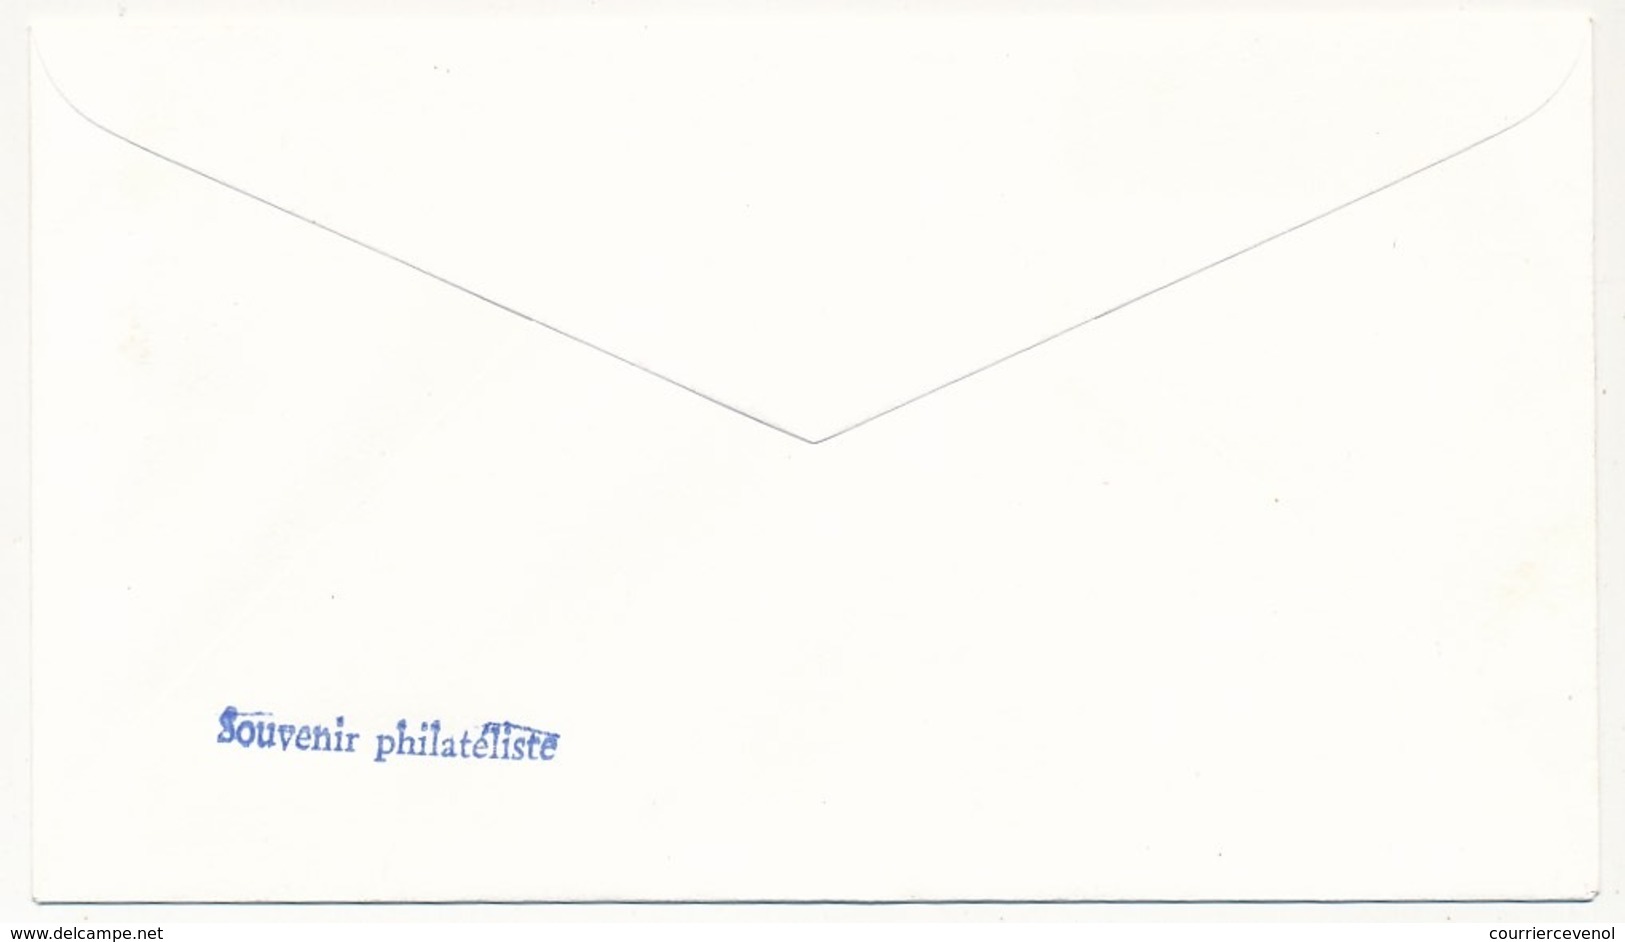 FRANCE - Enveloppe Philatélique "Timbres De La Libération - 5eme Exposition Nationale" Lyon 1977 - Affr 4F Libération - WW2 (II Guerra Mundial)